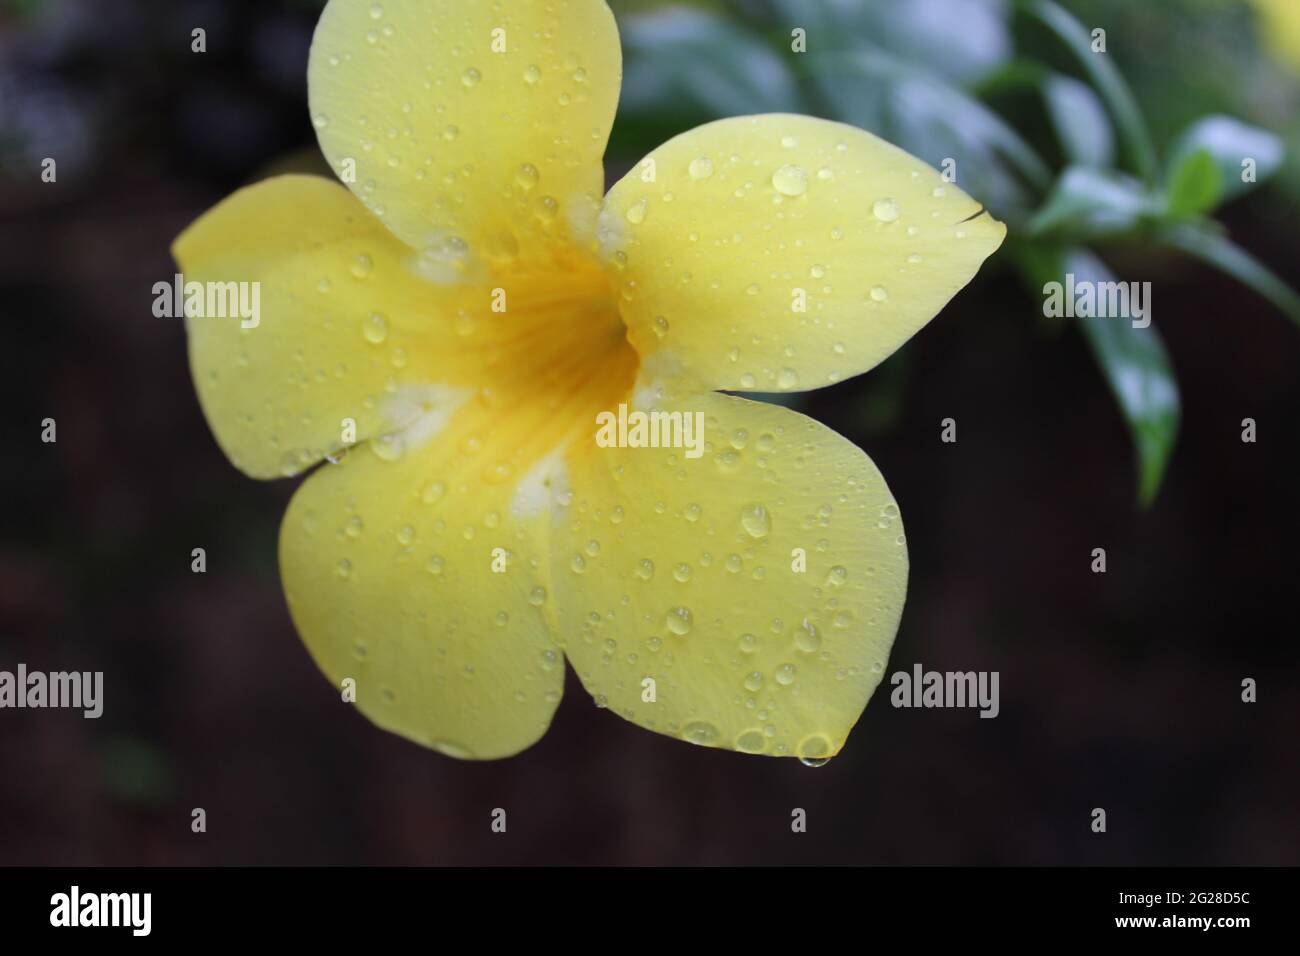 Beautiful Open Yellow Flower: Golden-trumpet (Apocynaceae) Allamanda cathartica L. Stock Photo